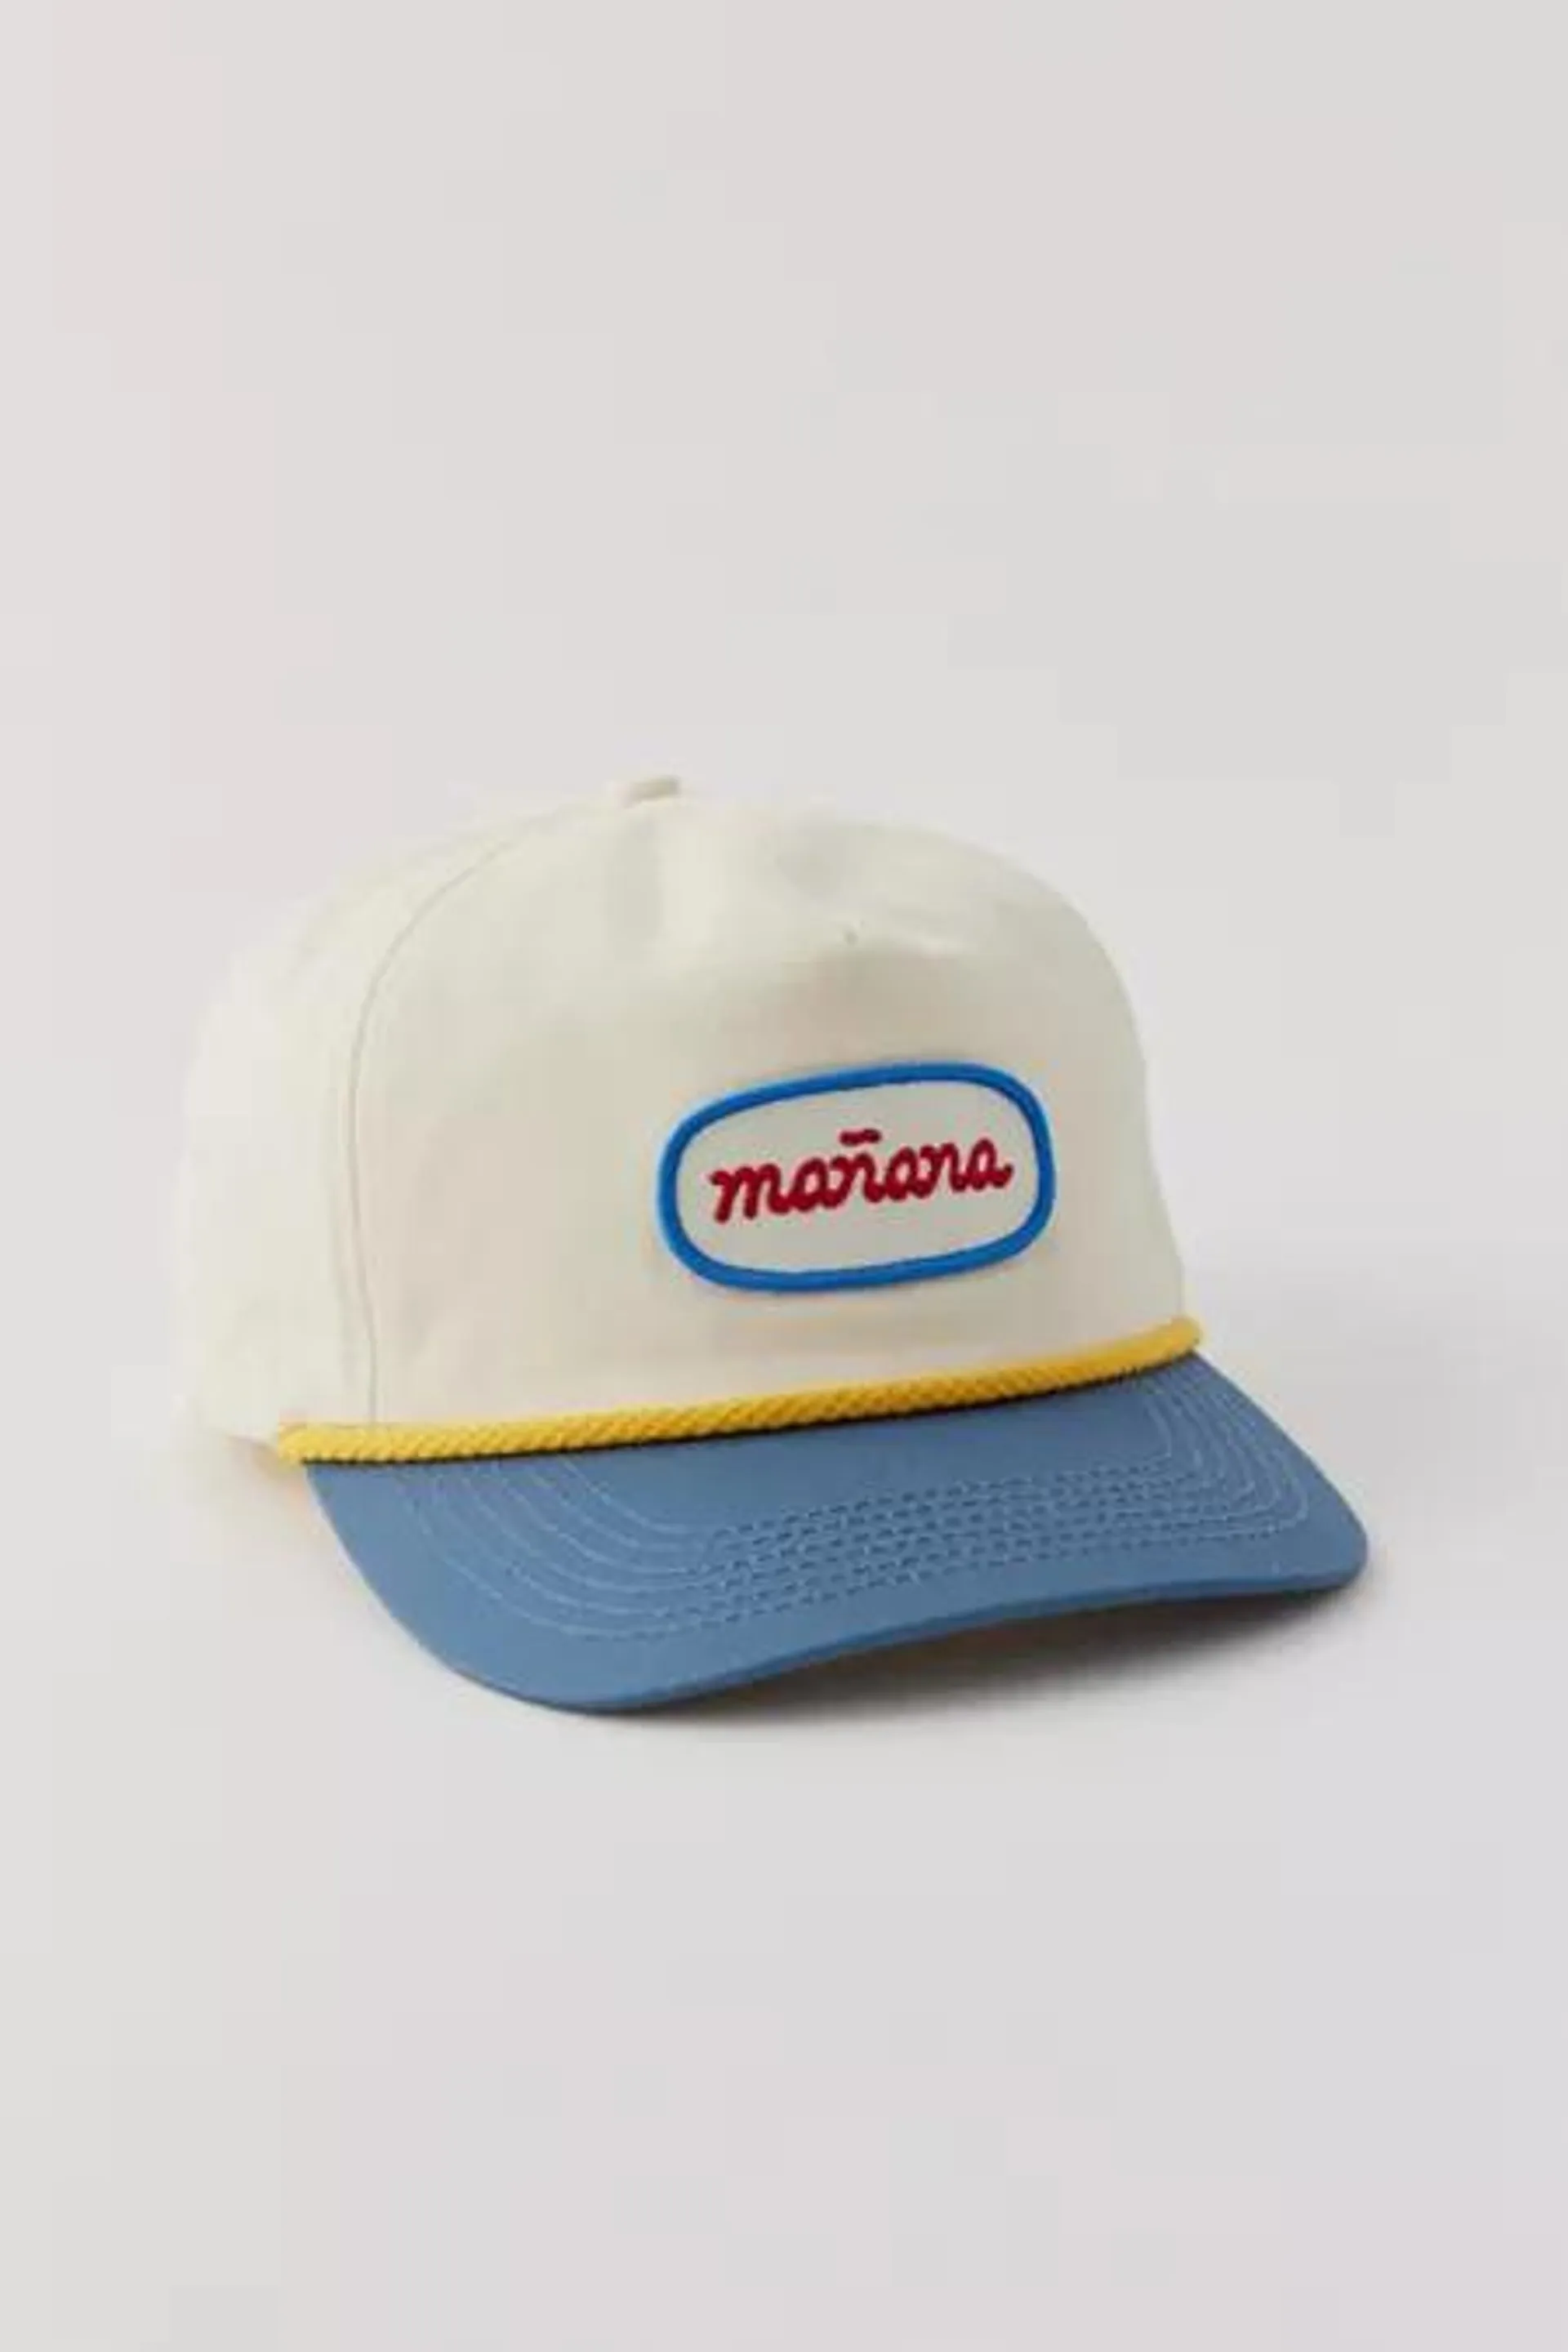 Mañana Surf Company Two-Tone Cap